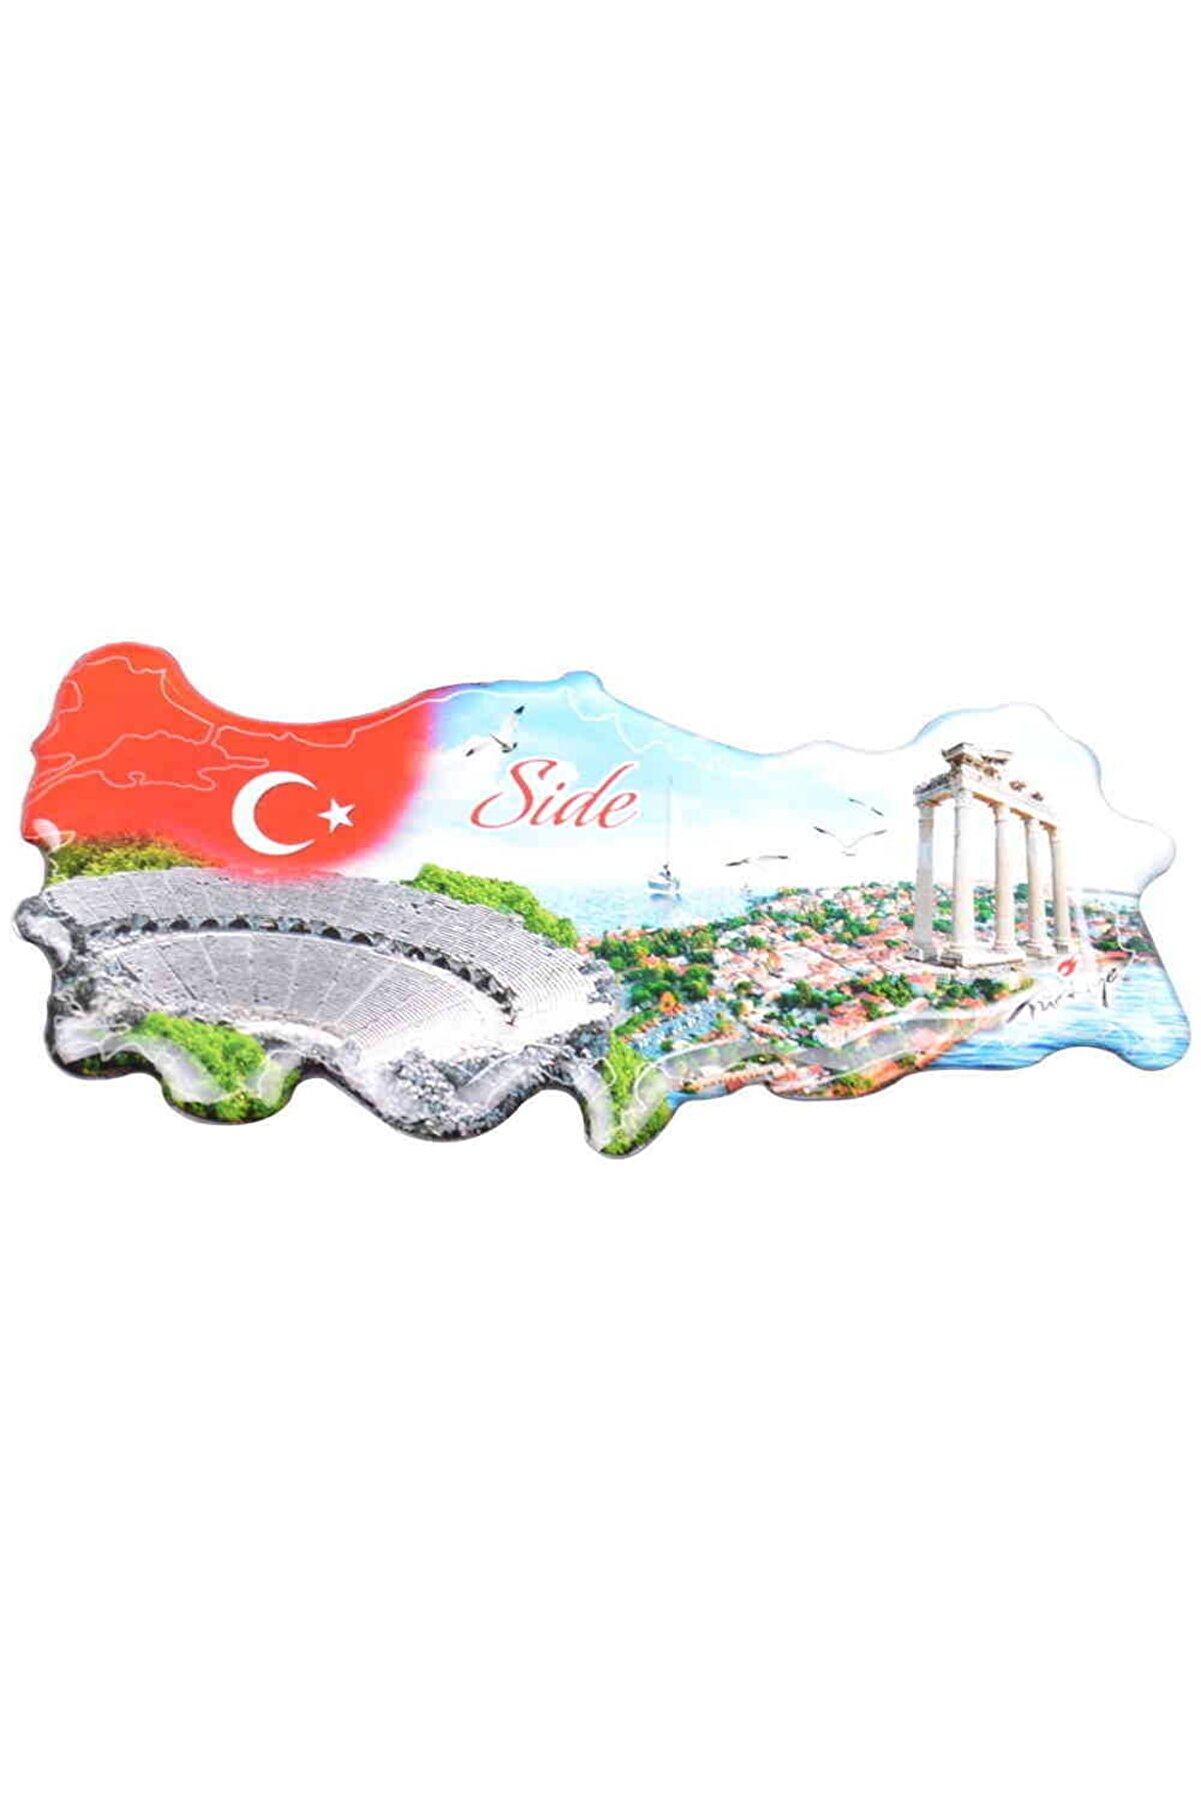 Side Temalı Türkiye Harita Magnet 4 Nolu Tasarım